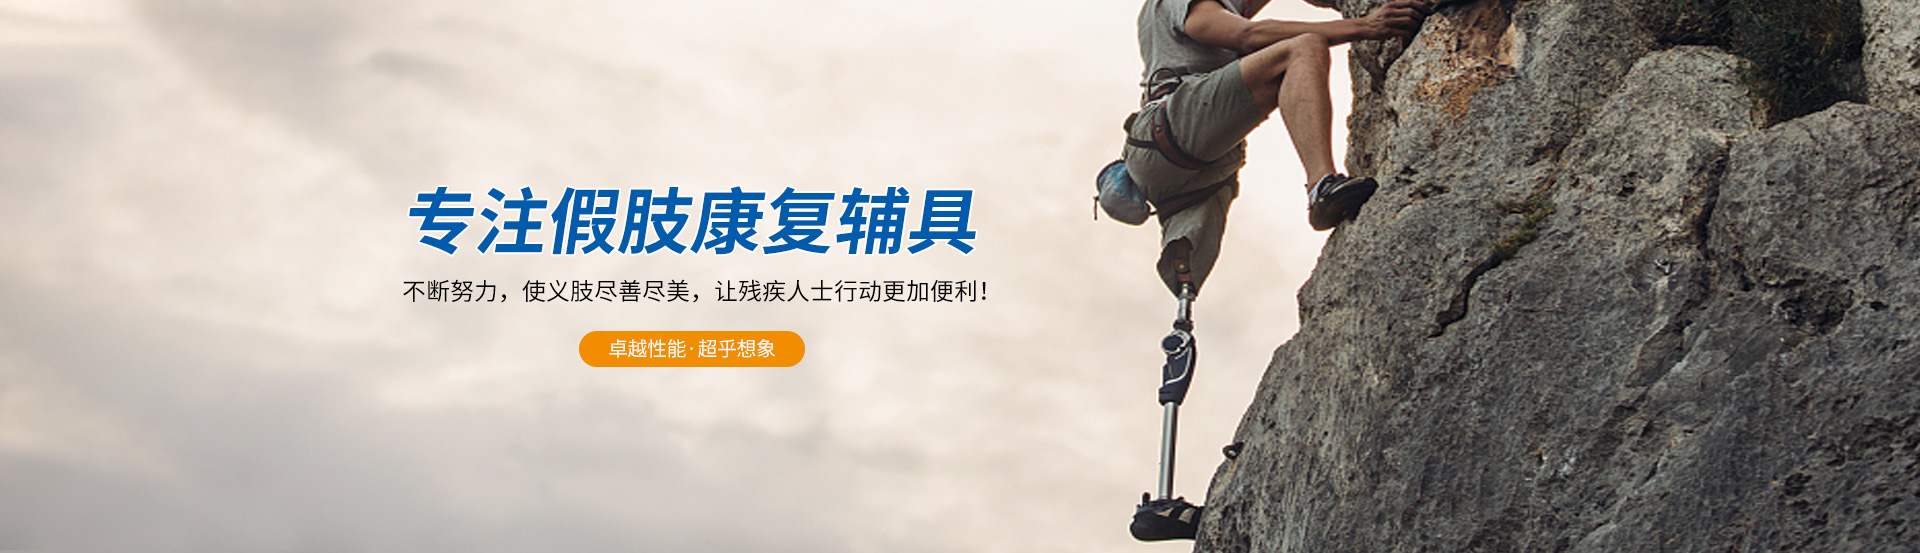 bwin·必赢(中国)唯一官方网站_产品6077